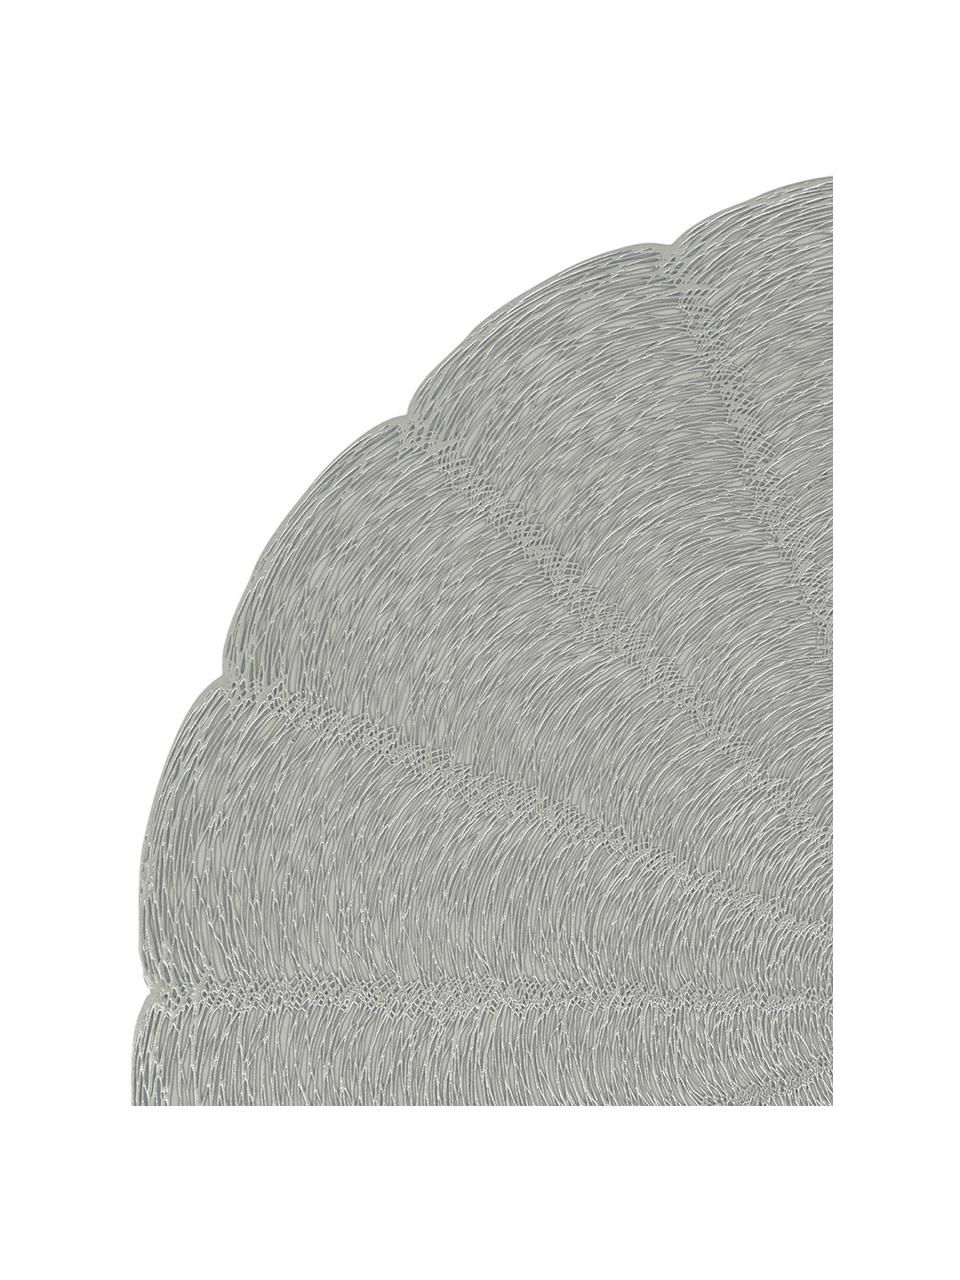 Tovaglietta rotonda americana Lumi 2 pz, Plastica, Grigio, Ø 38 cm